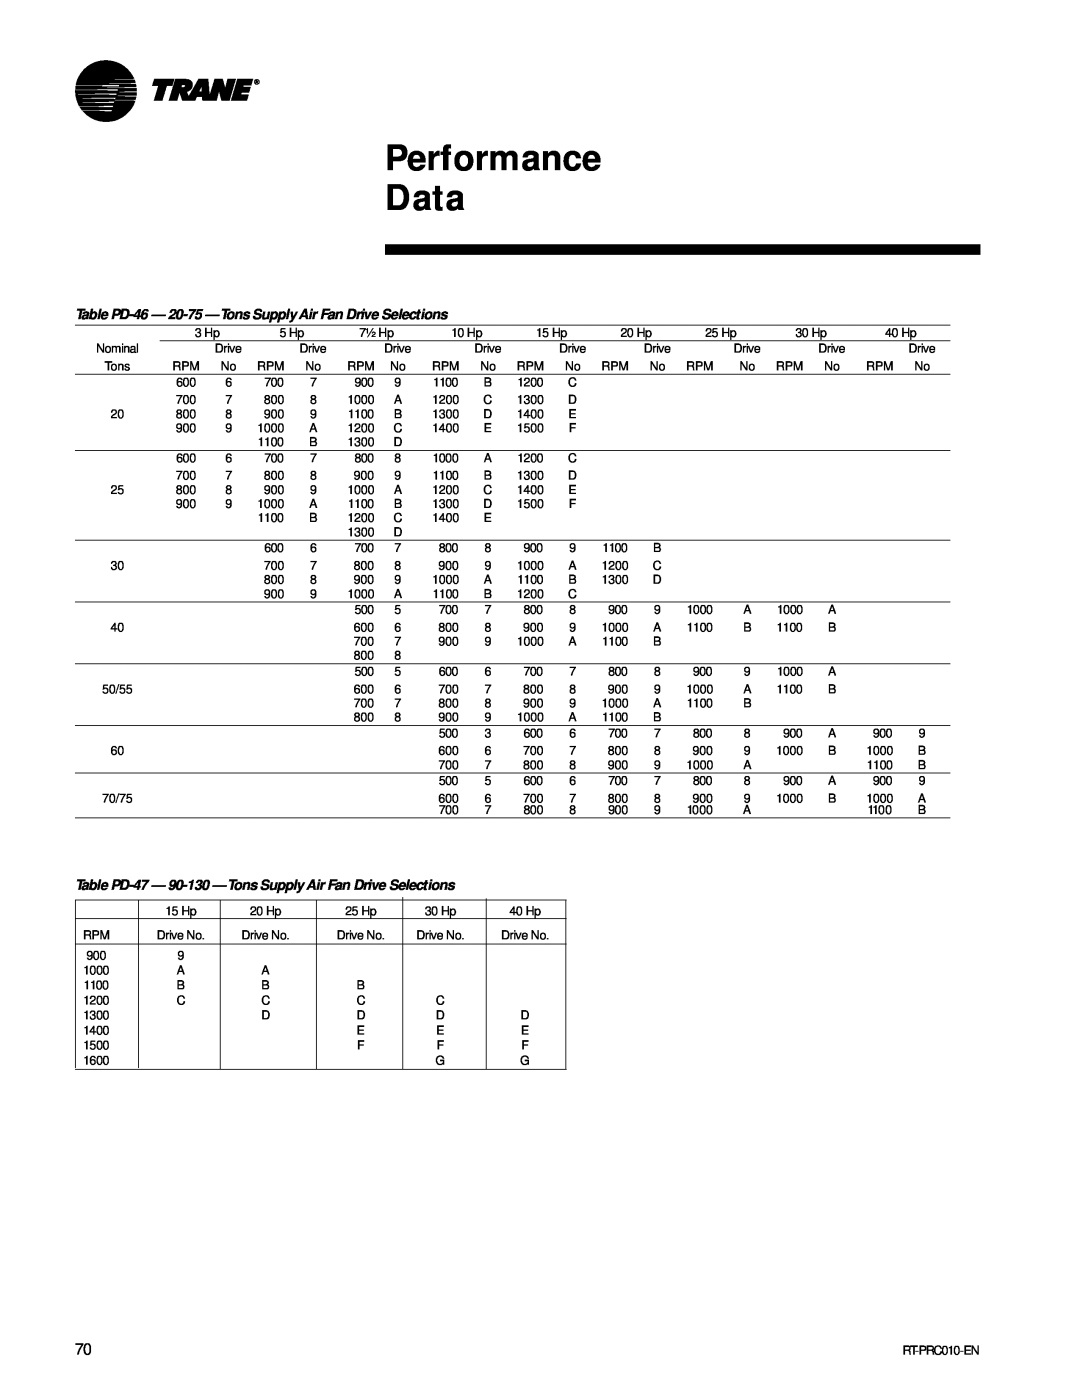 Trane RT-PRC010-EN manual Performance Data, 1000 